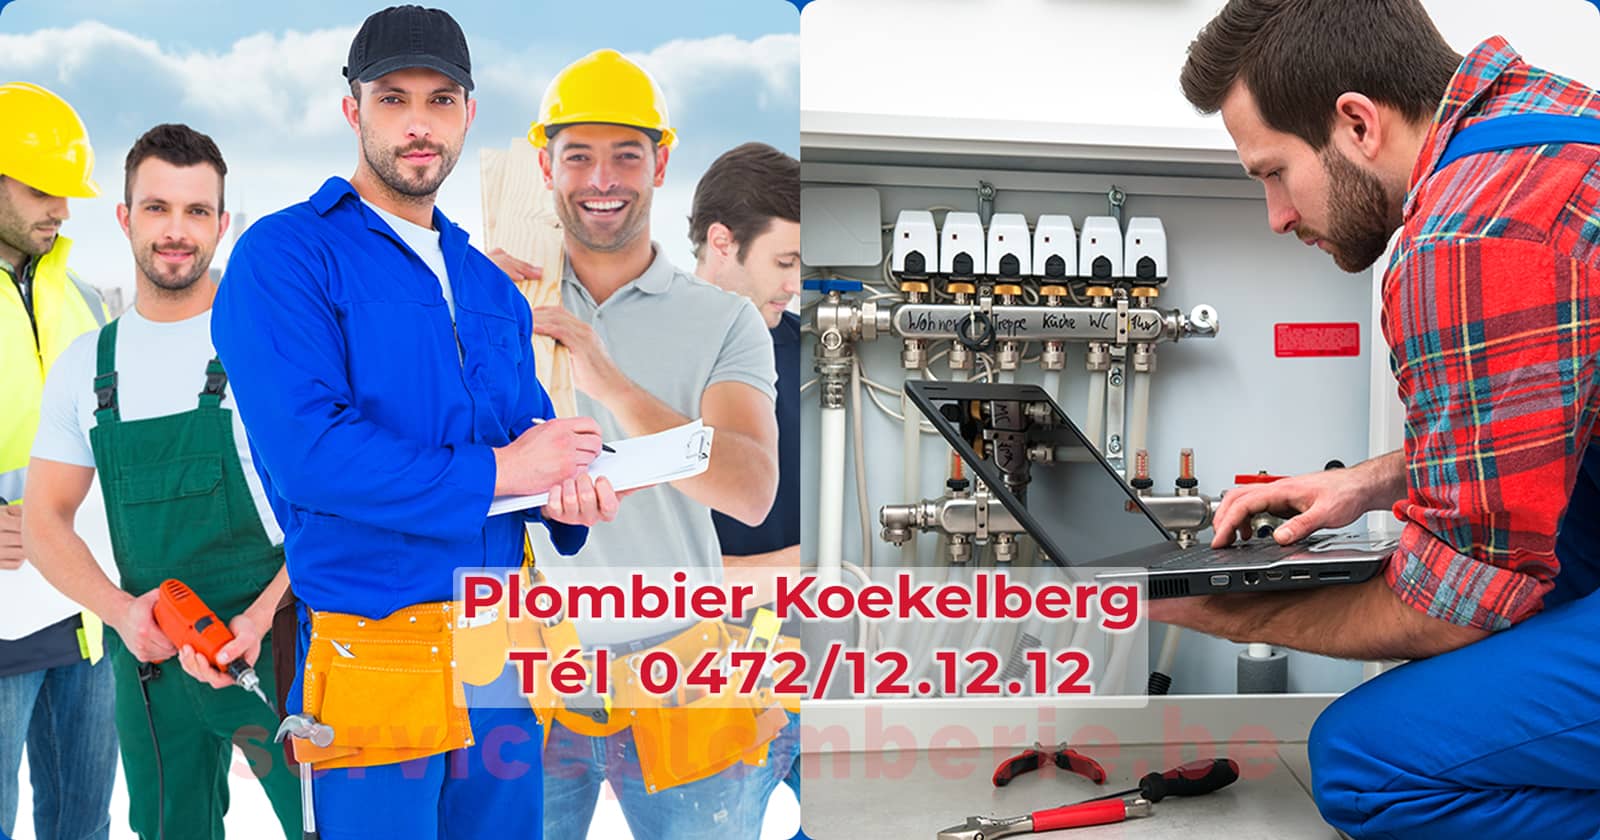 Plombier Koekelberg Agréé Professionnel Service Plomberie Tél 0472/12.12.12